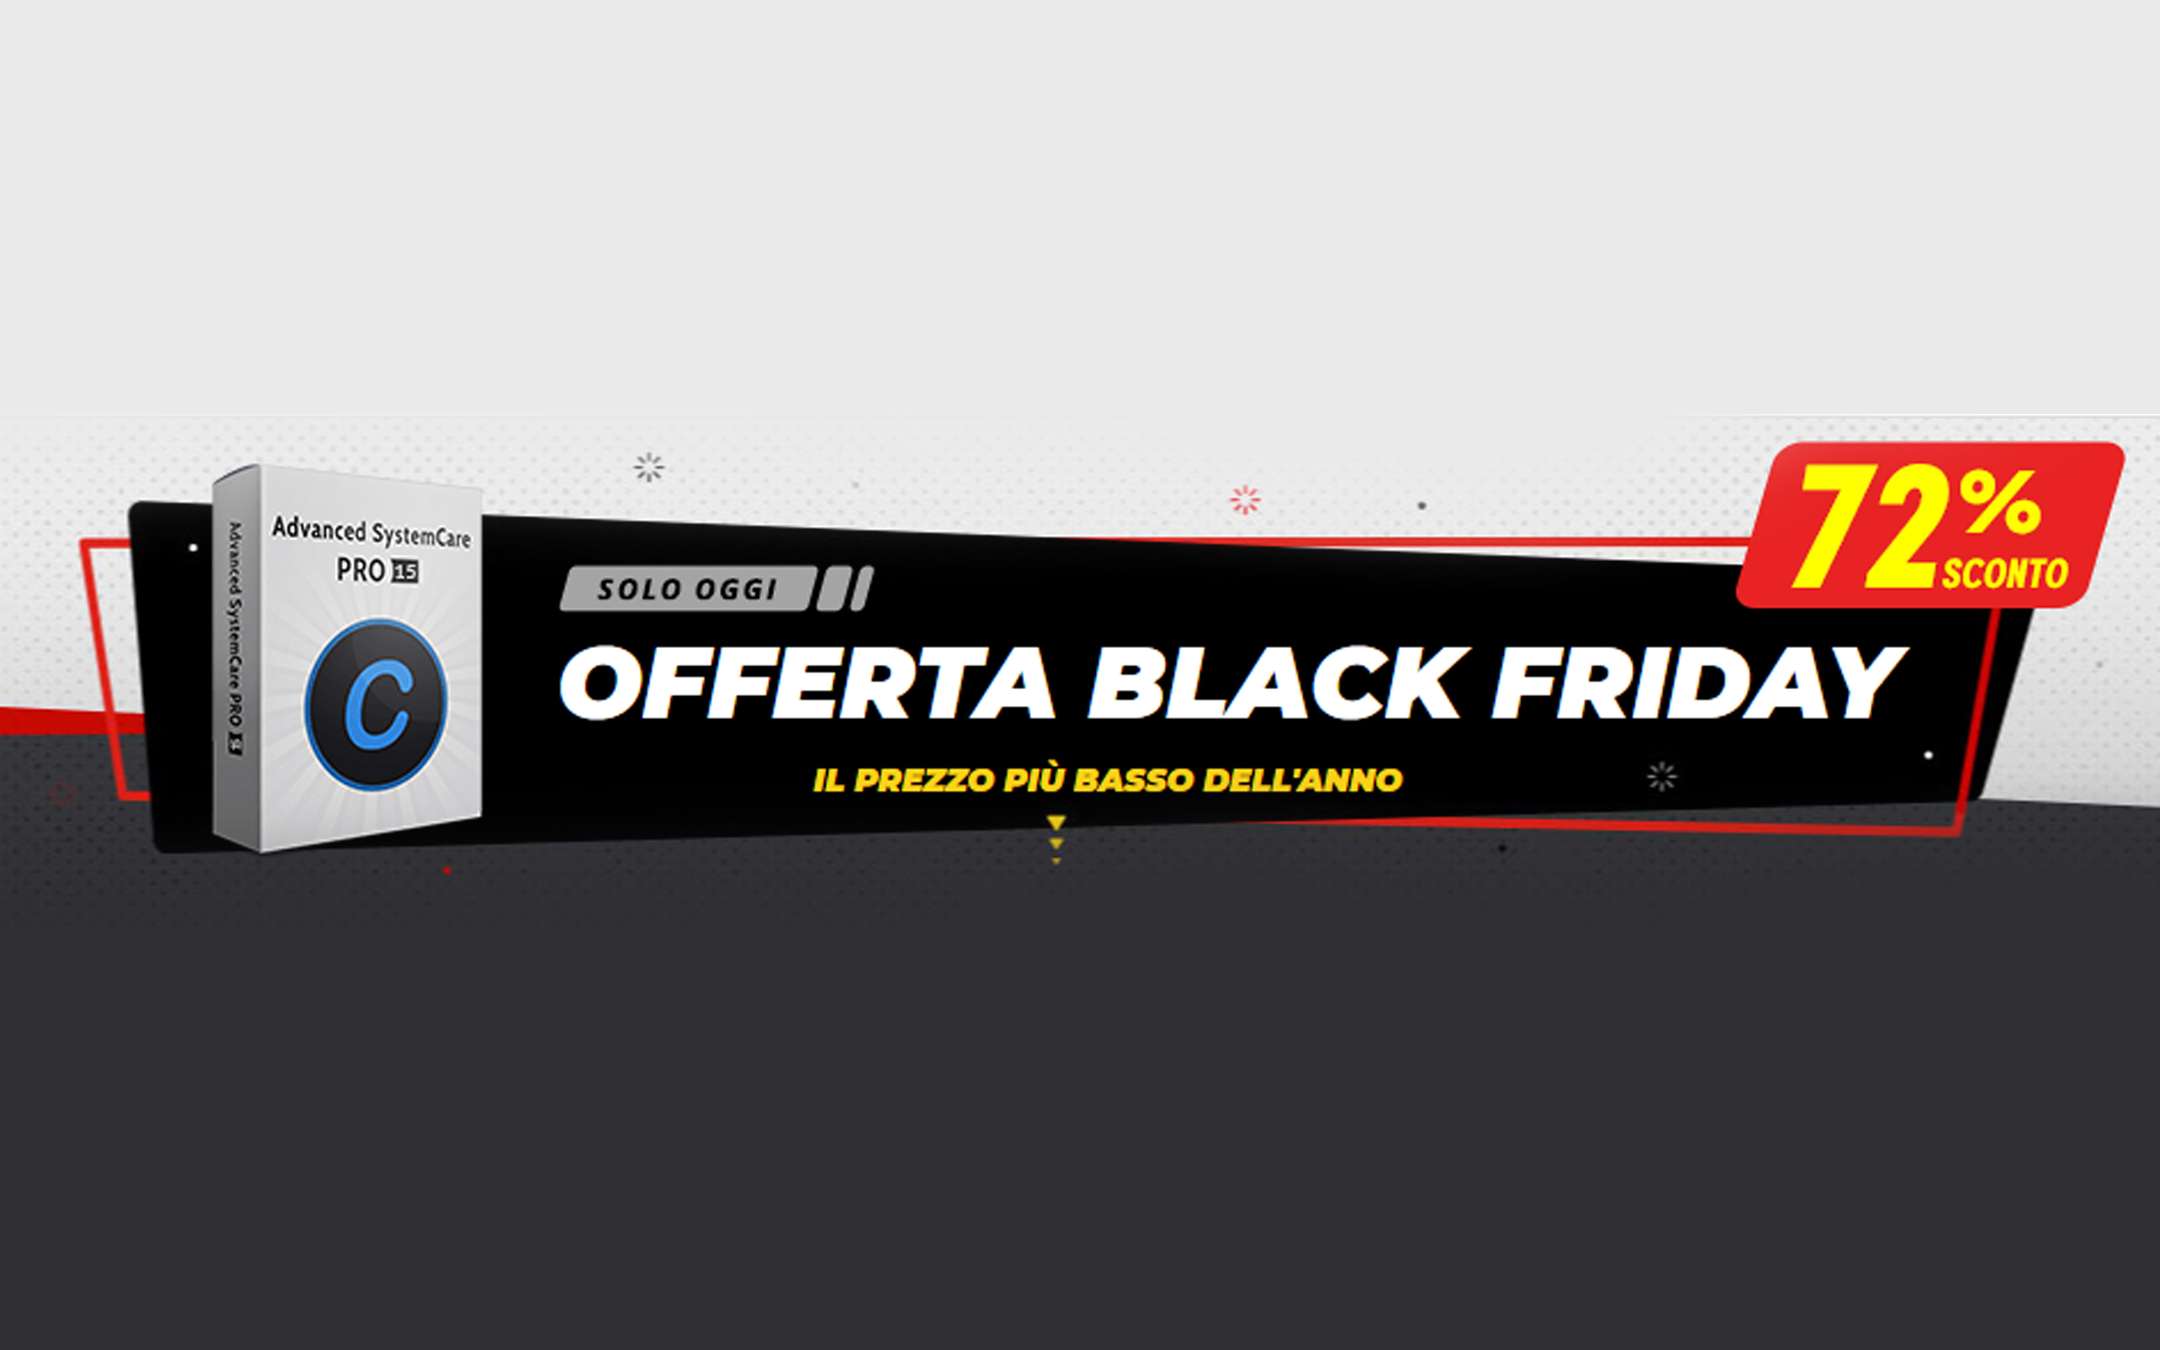 PC veloce con Advanced SystemCare: promo Black Friday